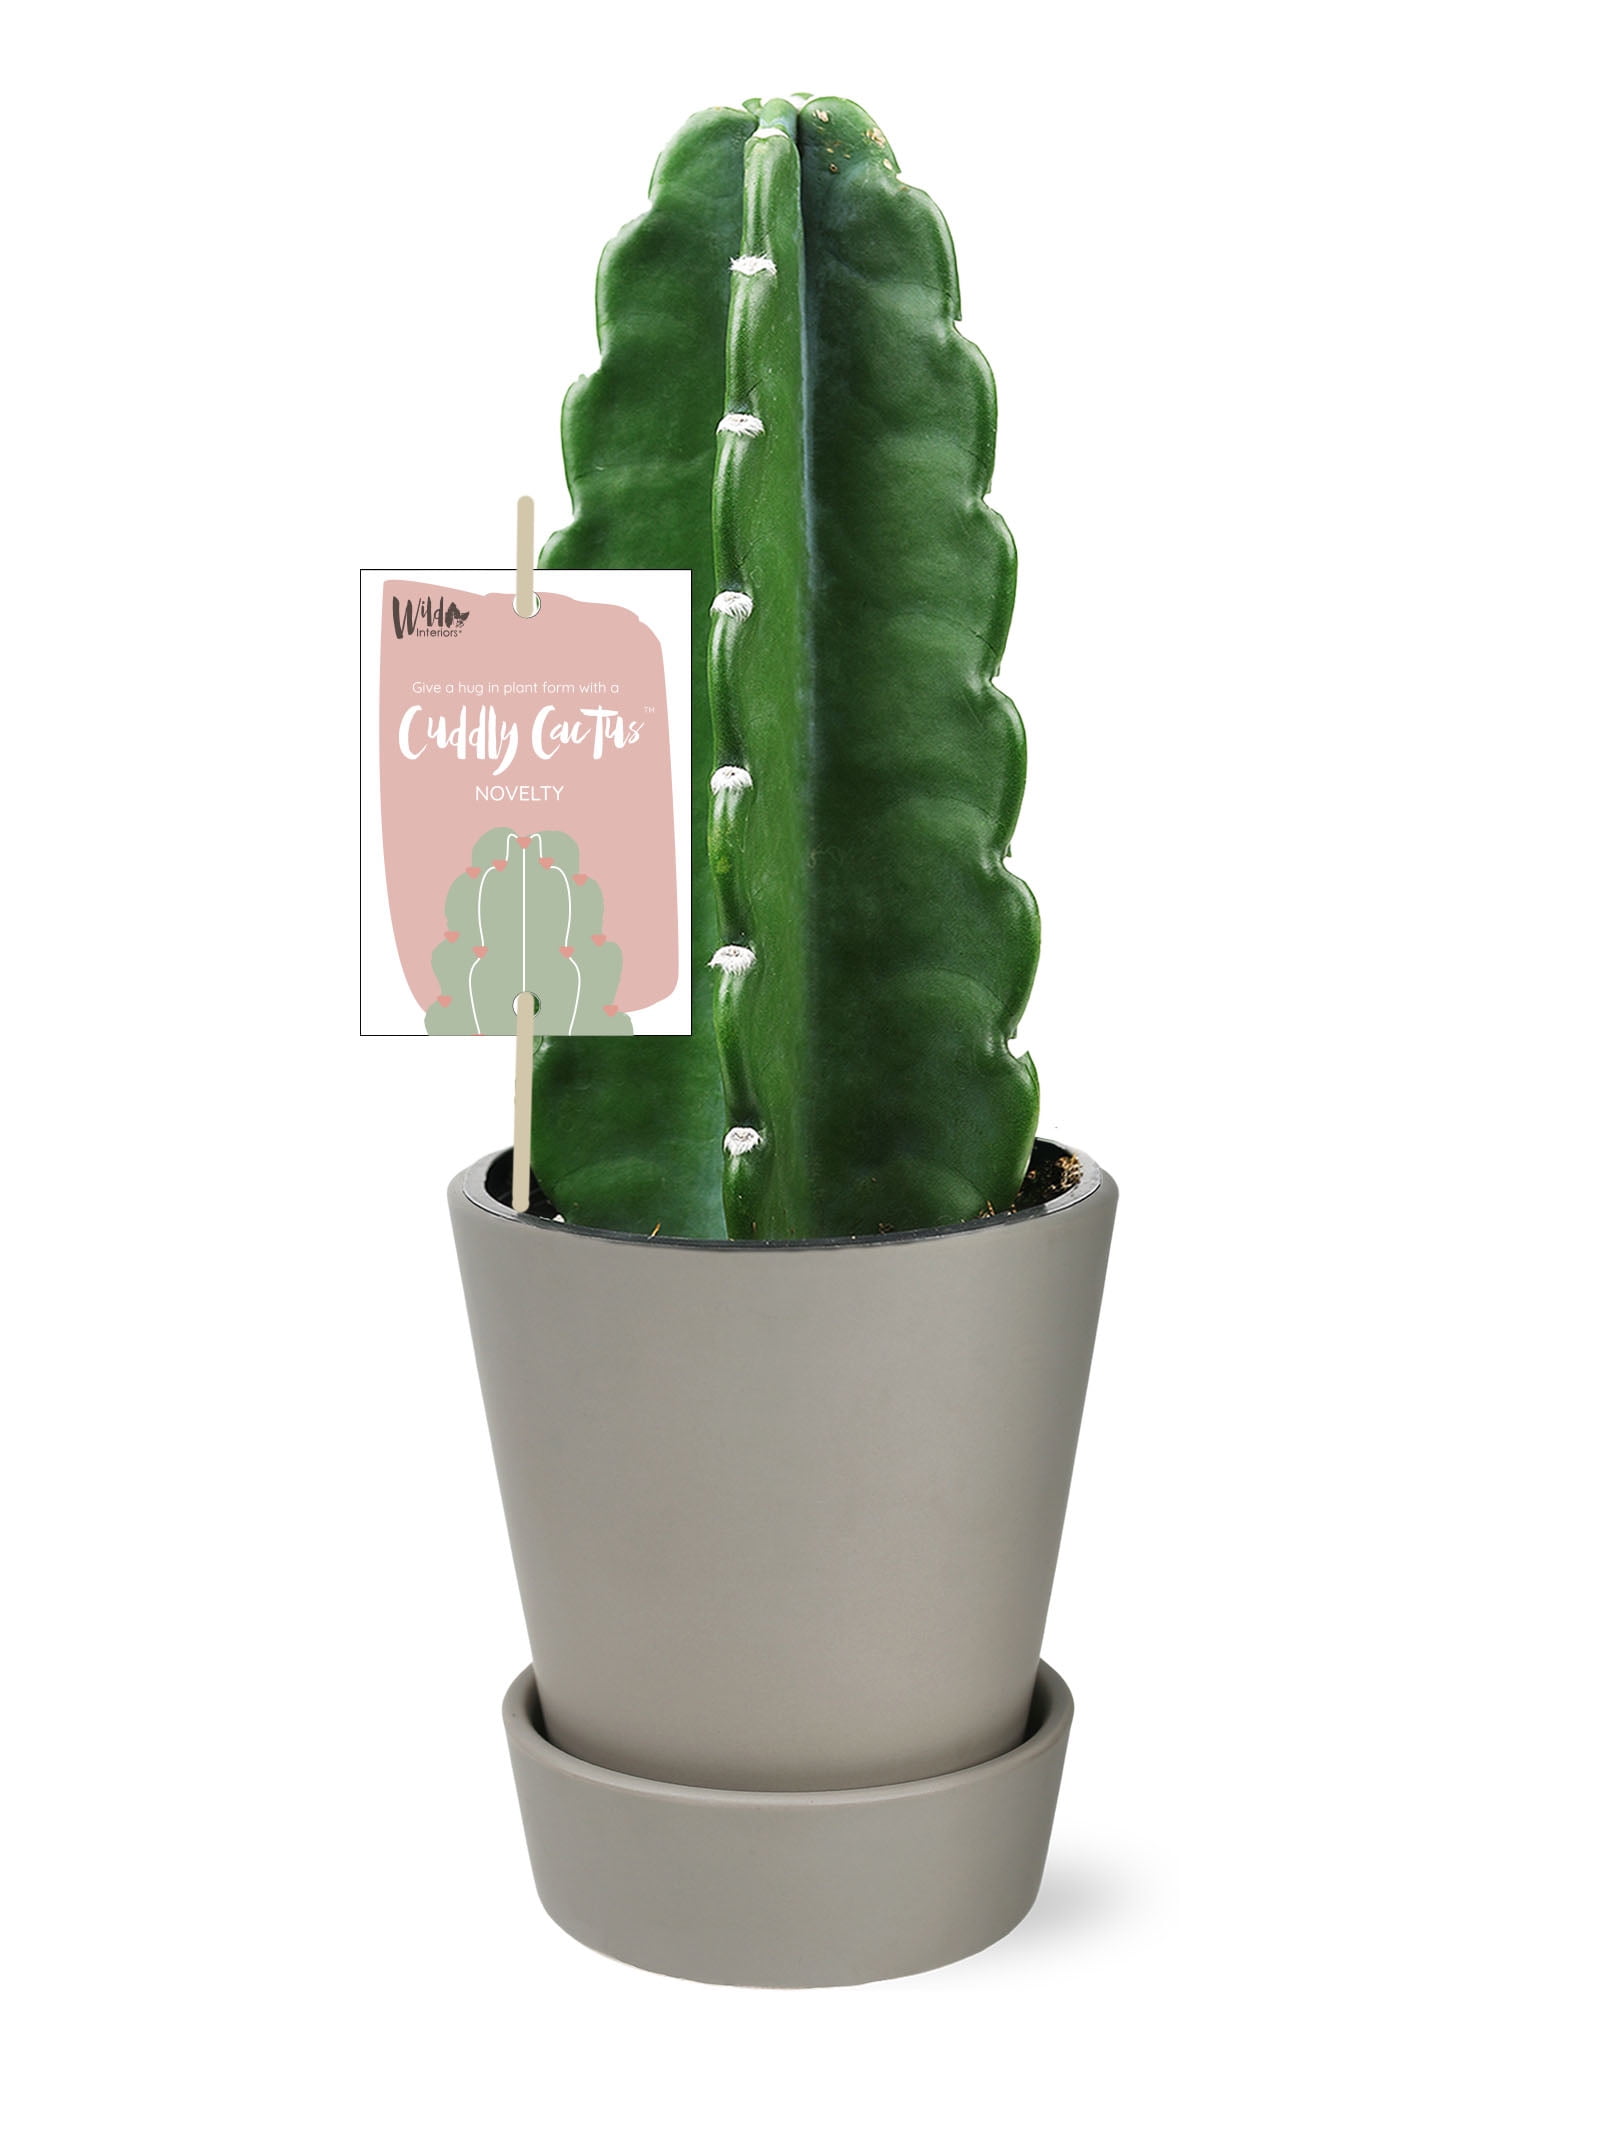 Details about   Opuntia zebrina cactus Succulent potted Home live plants high 6-8cm 